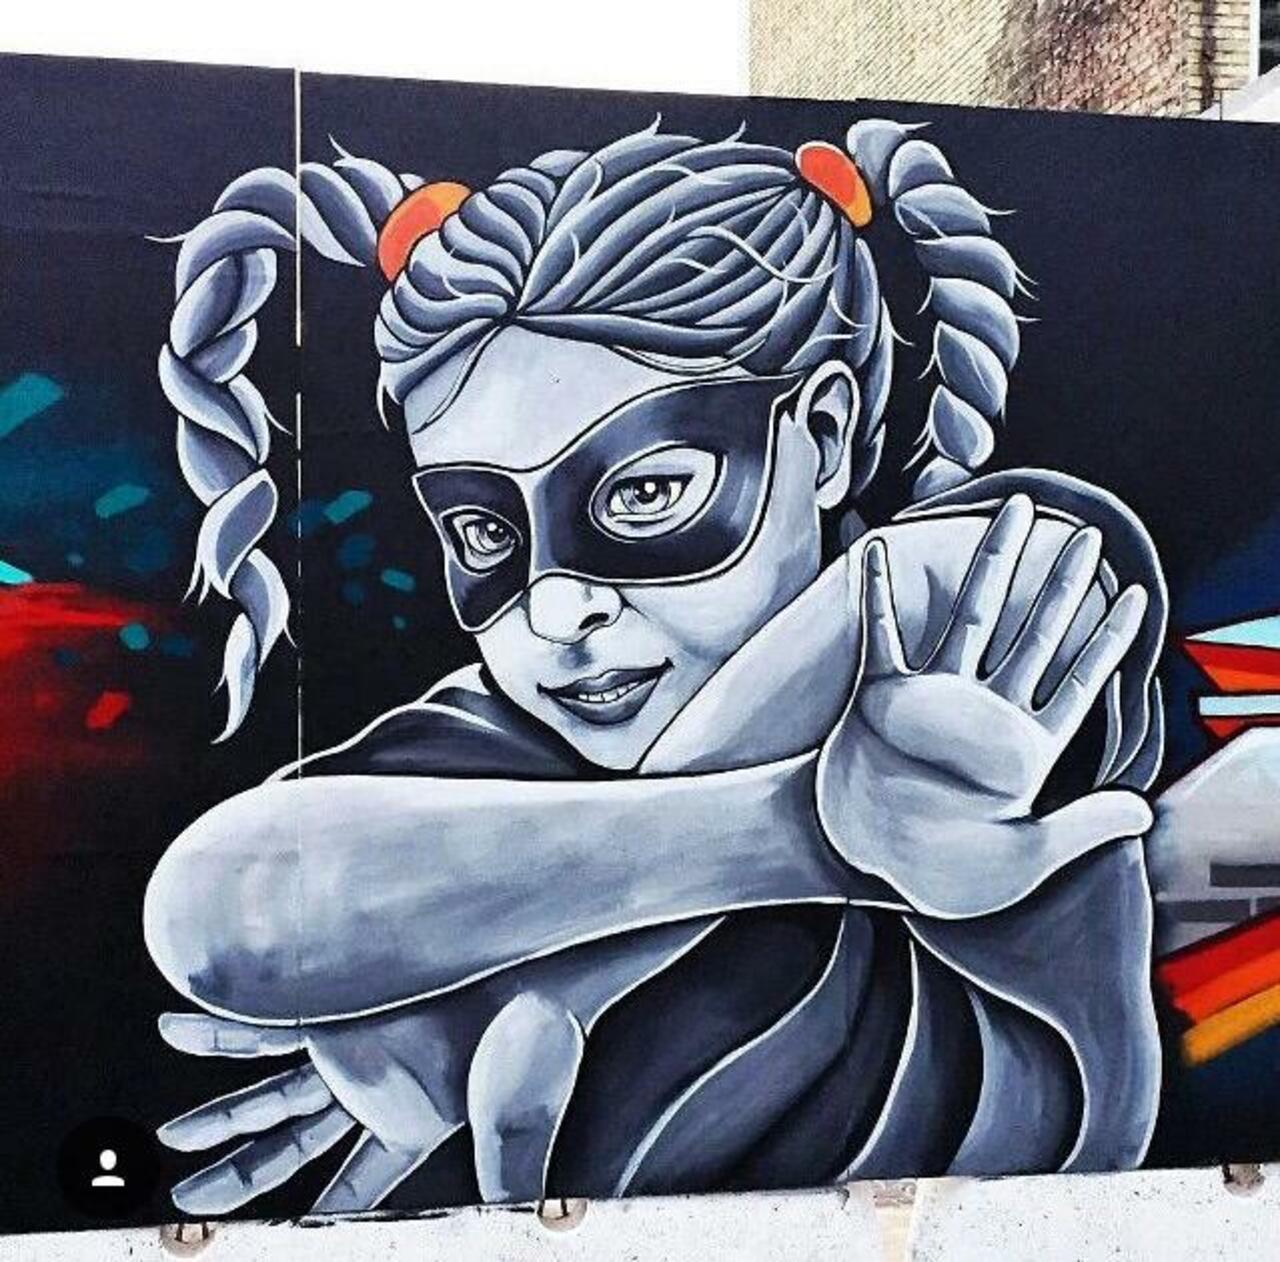 Street Art by Stinehvid 

#art #graffiti #mural #streetart http://t.co/6DKbdCxJJY